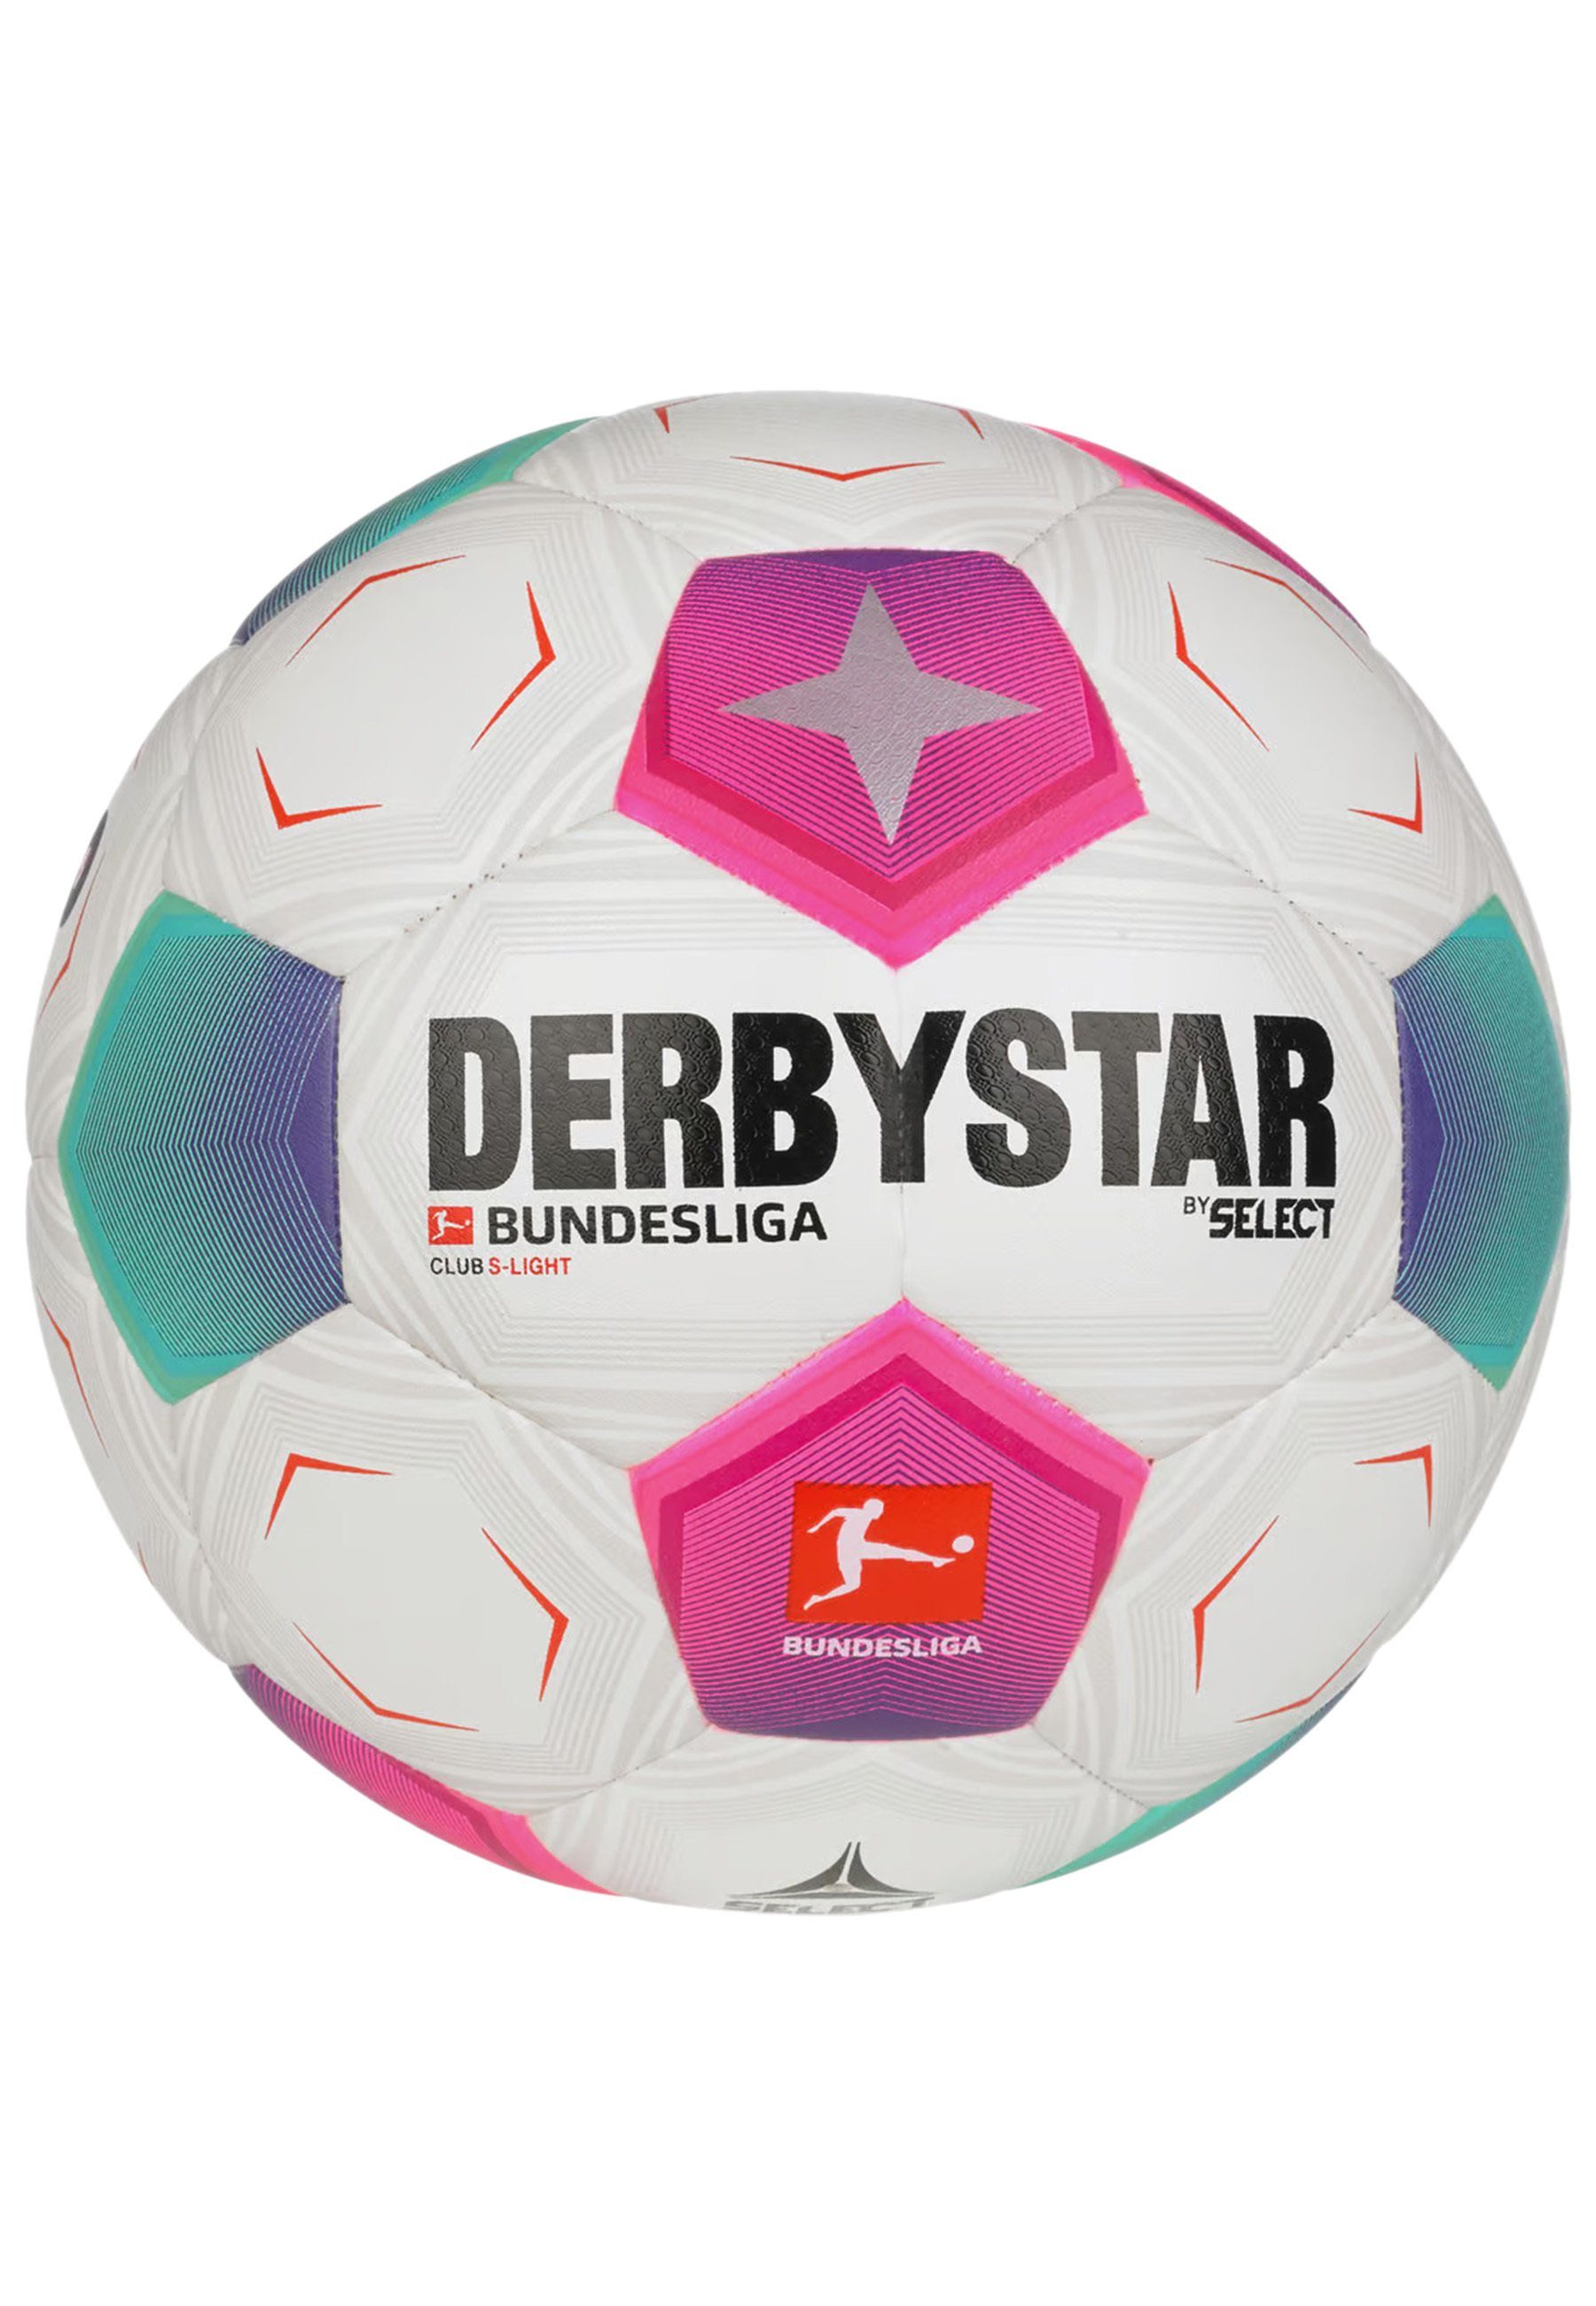 Bundesliga Club Derbystar S-Light Fußball